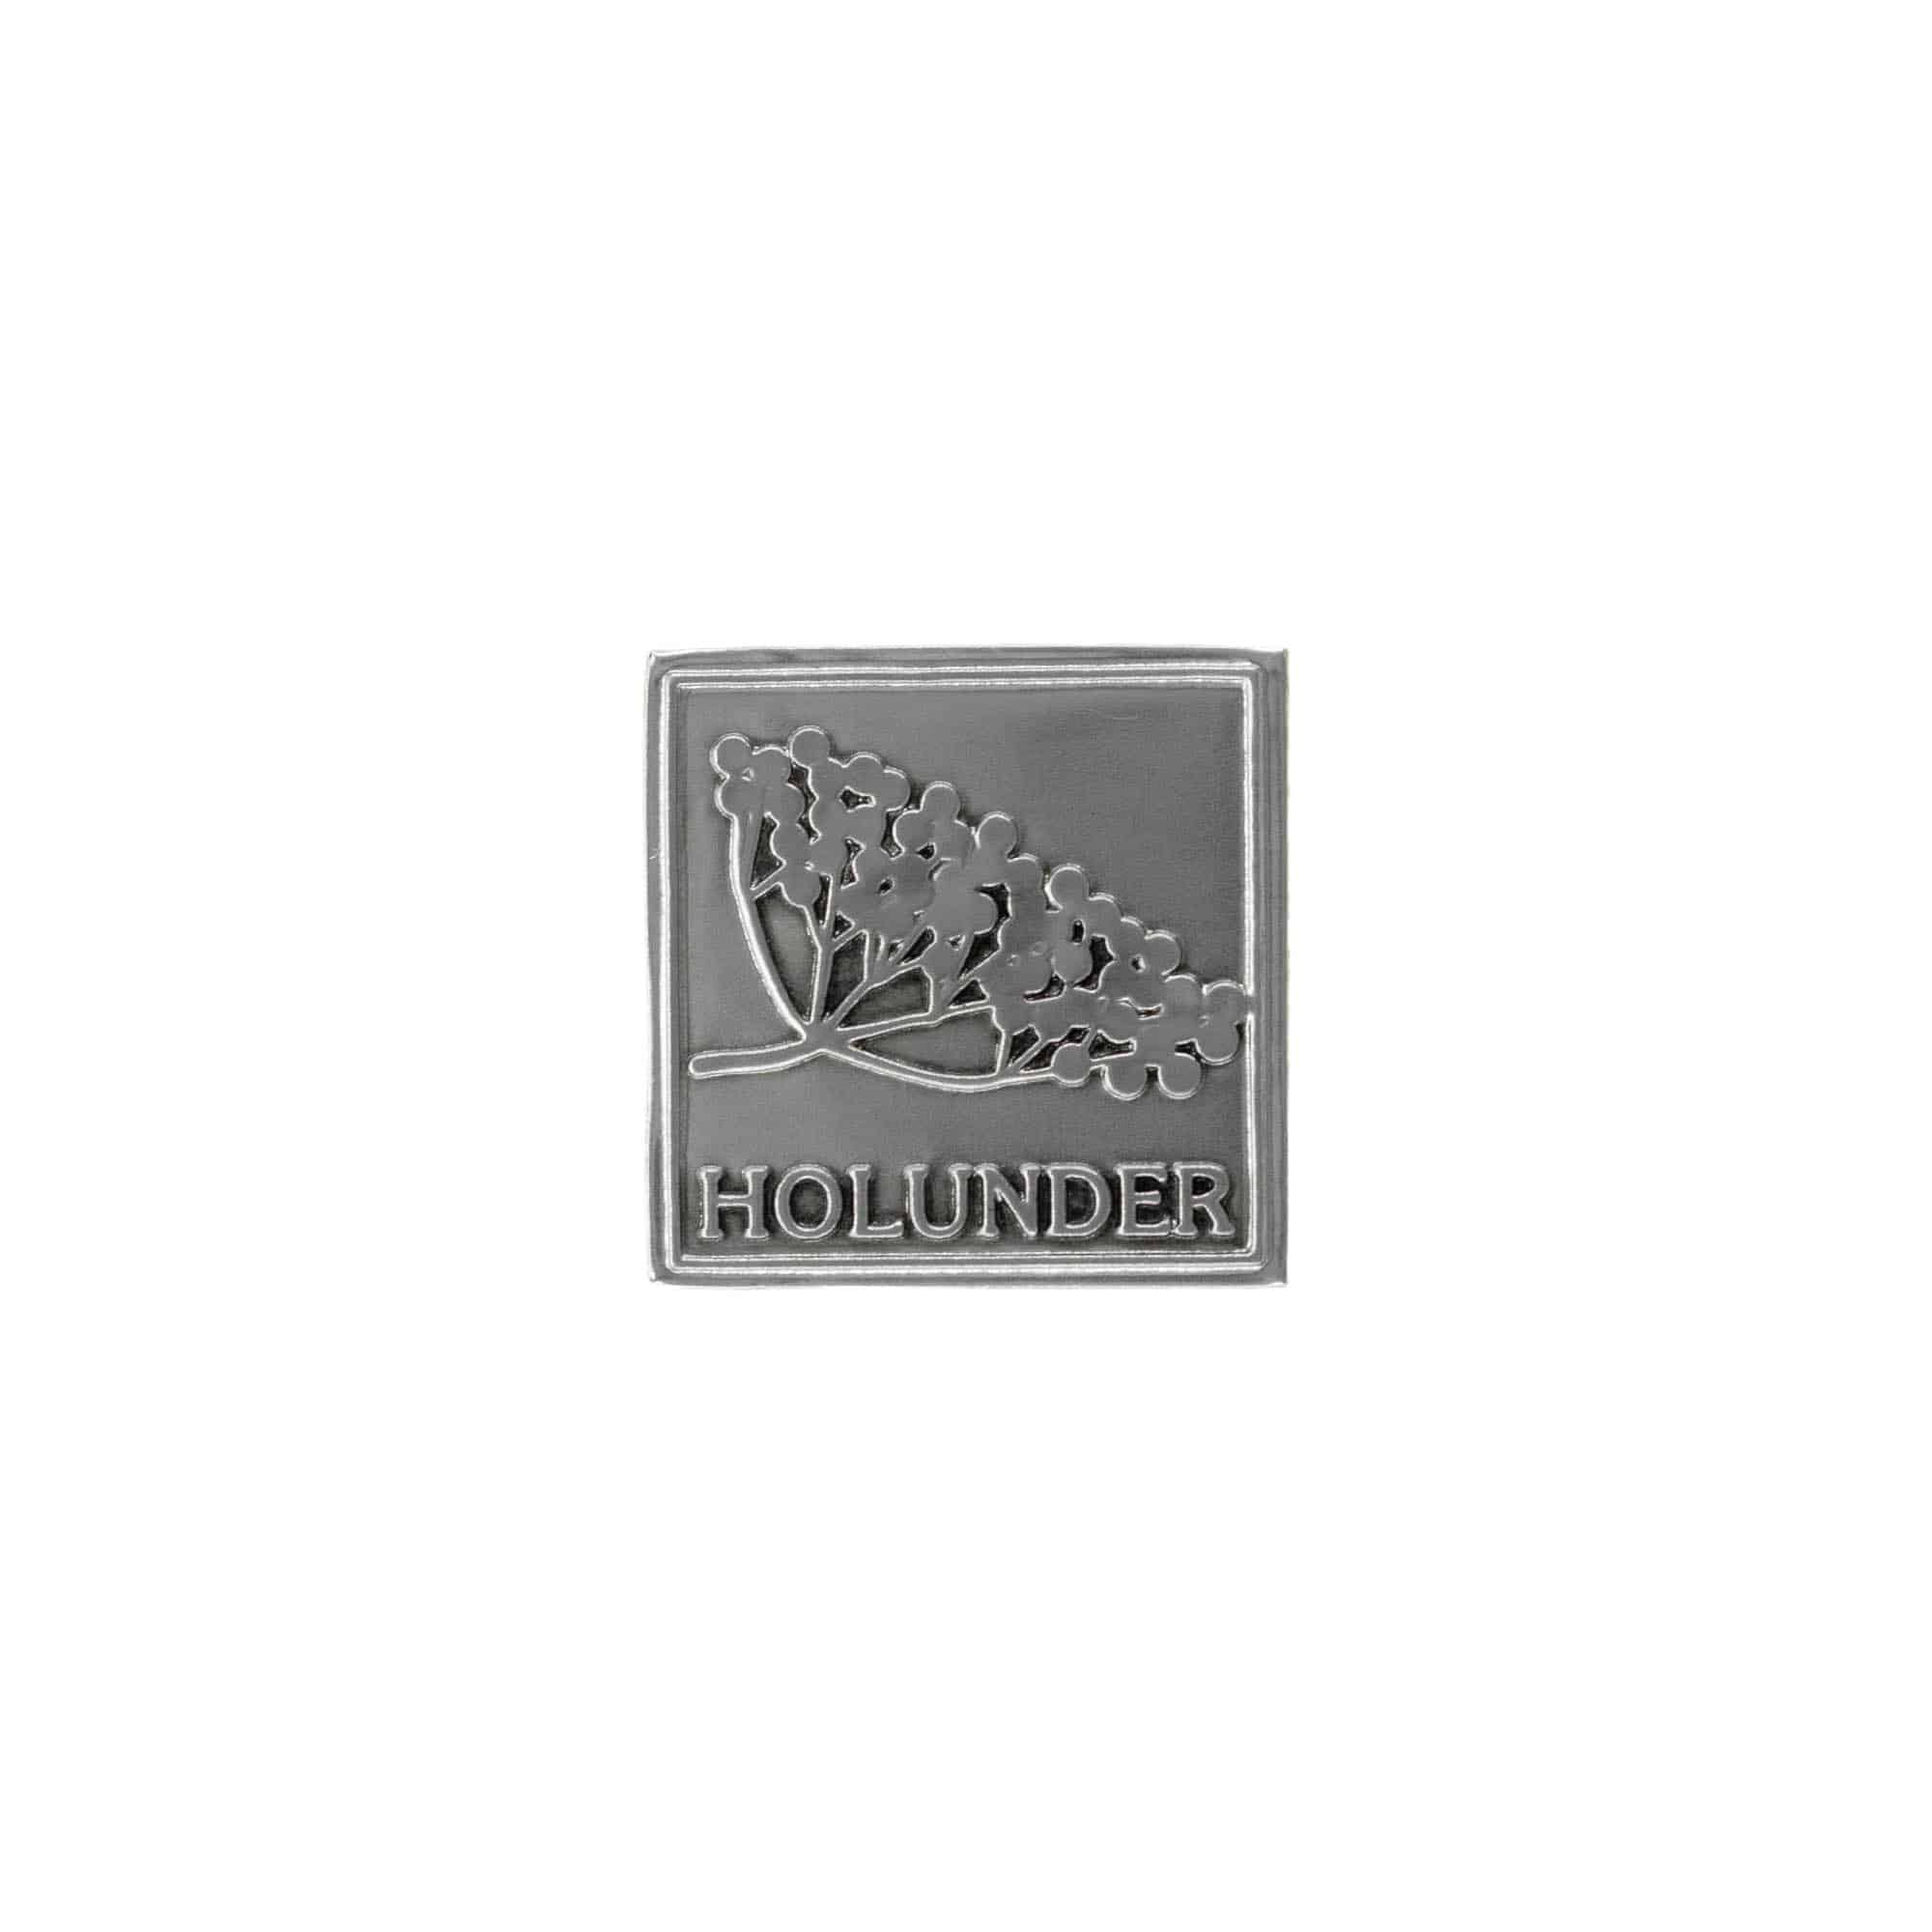 Zinnetikett 'Holunder', quadratisch, Metall, silber